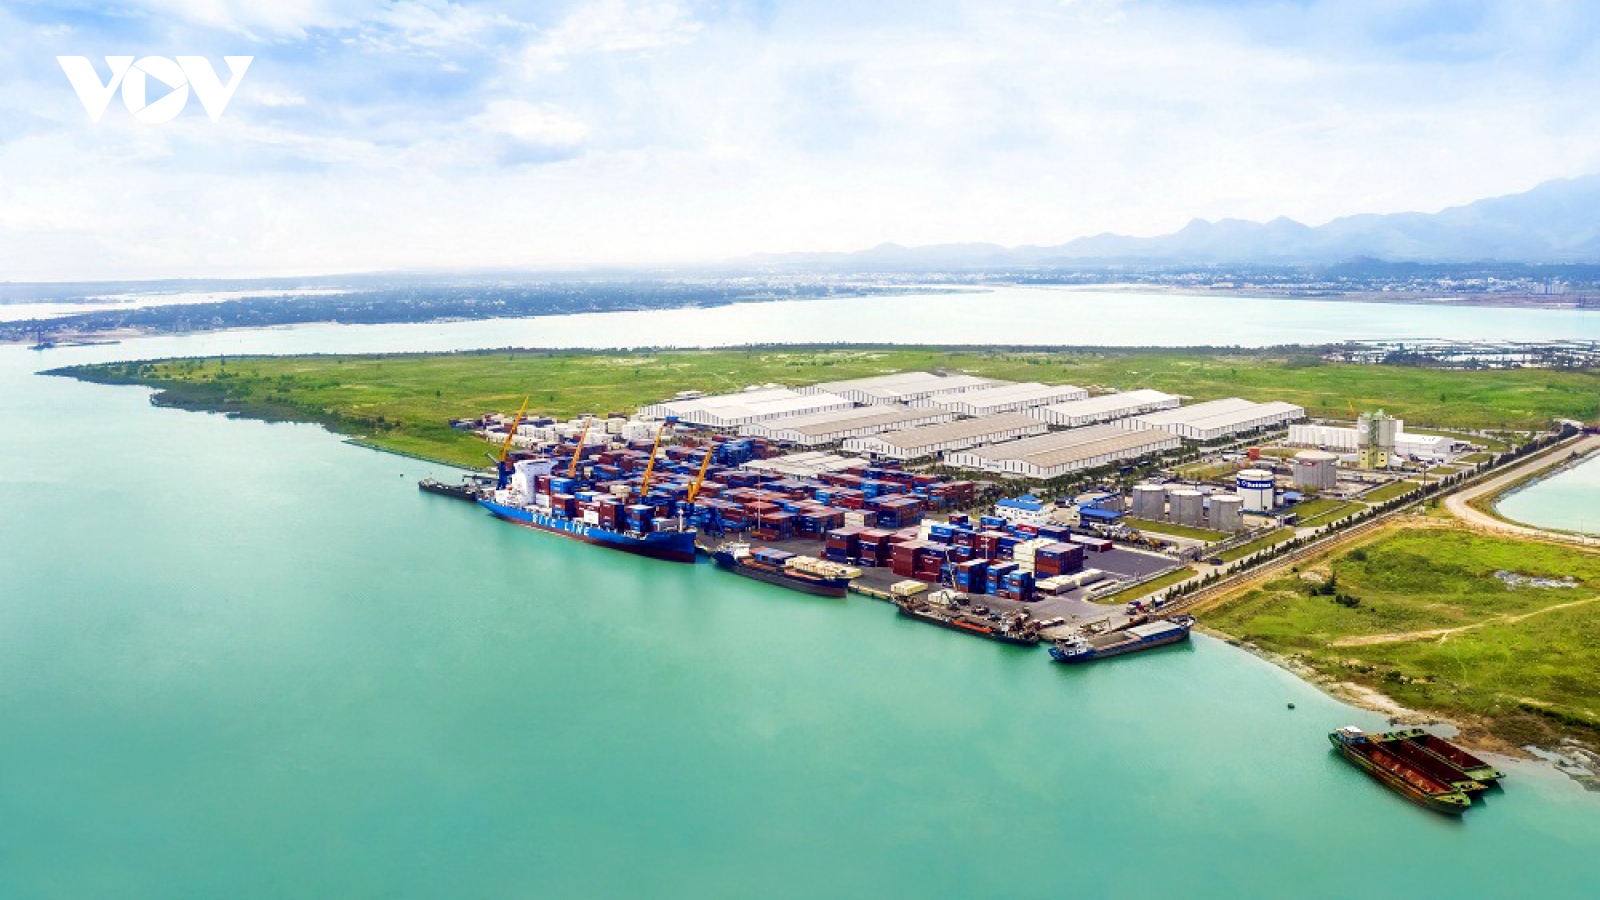 Quy hoạch Cảng biển Quảng Nam cần thêm tuyến luồng cảng mới